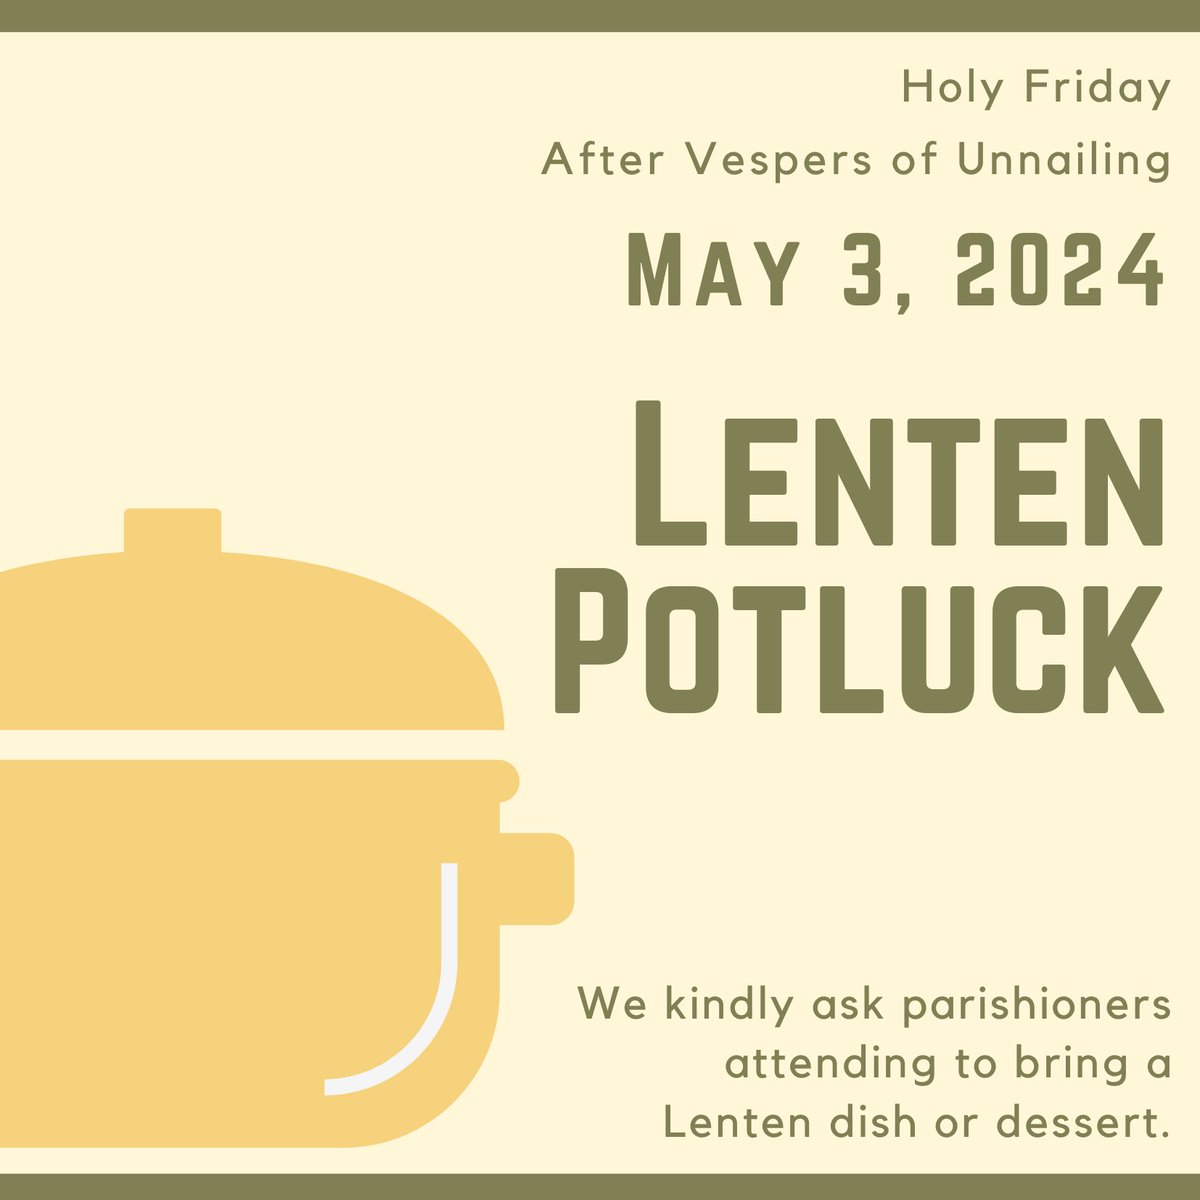 Lenten Potluck

#SaintPaulEmmaus #LentenPotluck